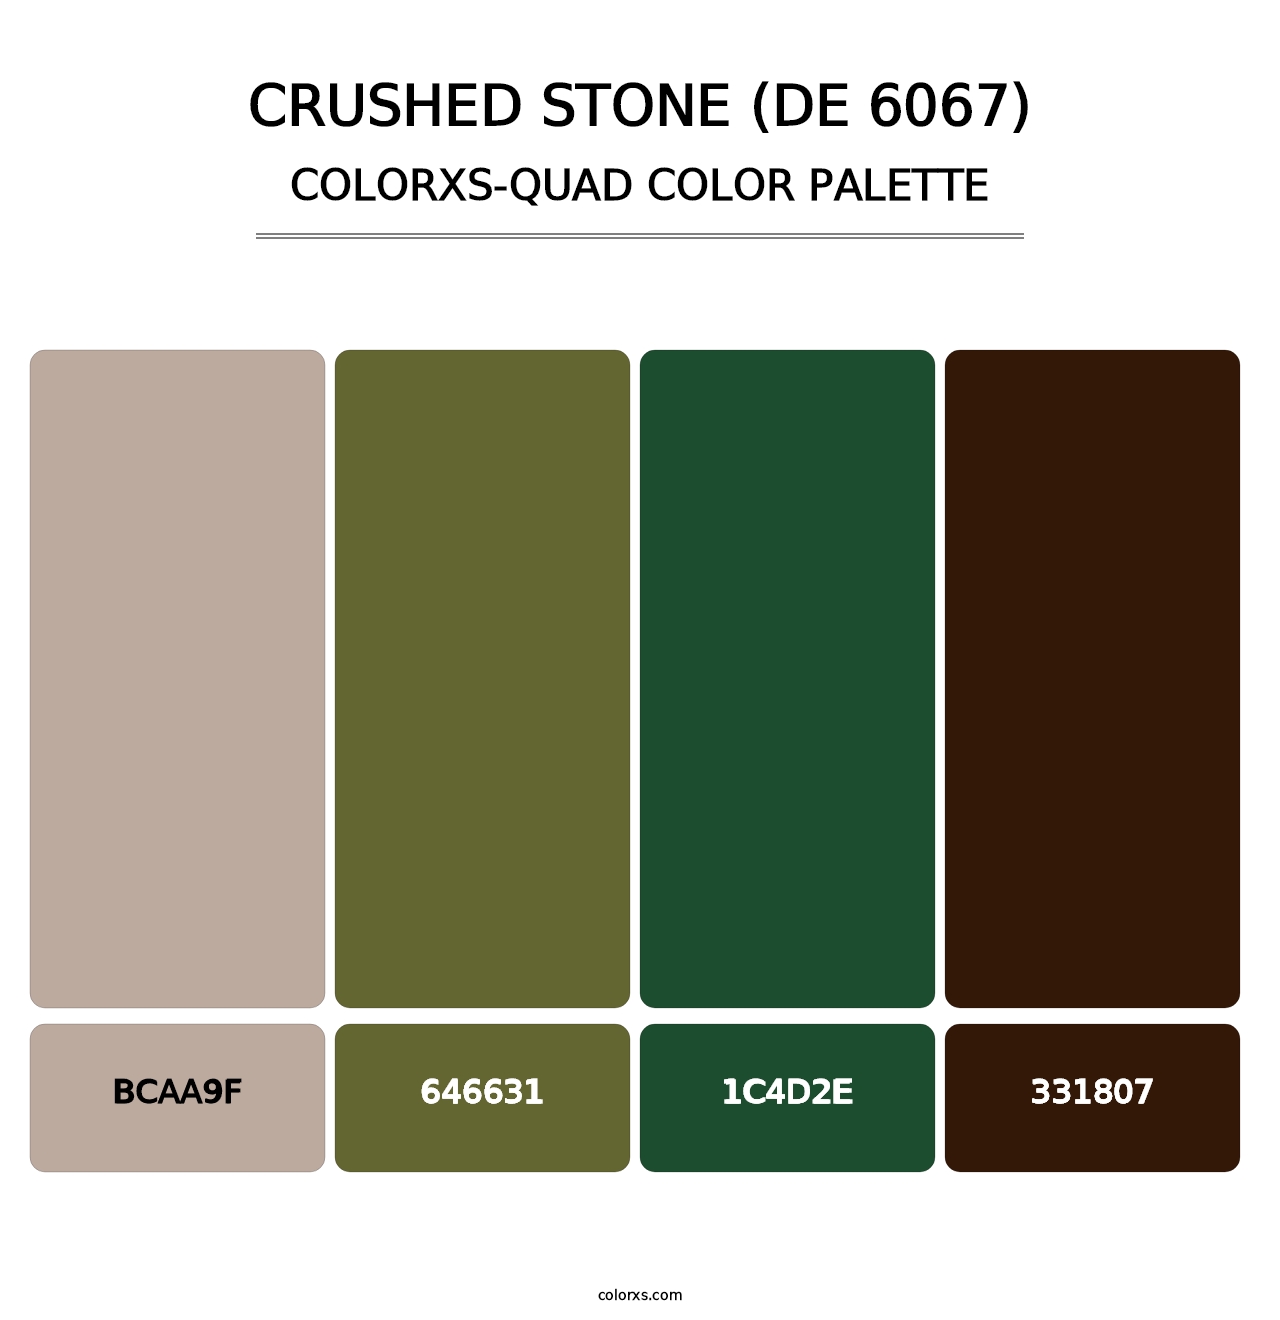 Crushed Stone (DE 6067) - Colorxs Quad Palette